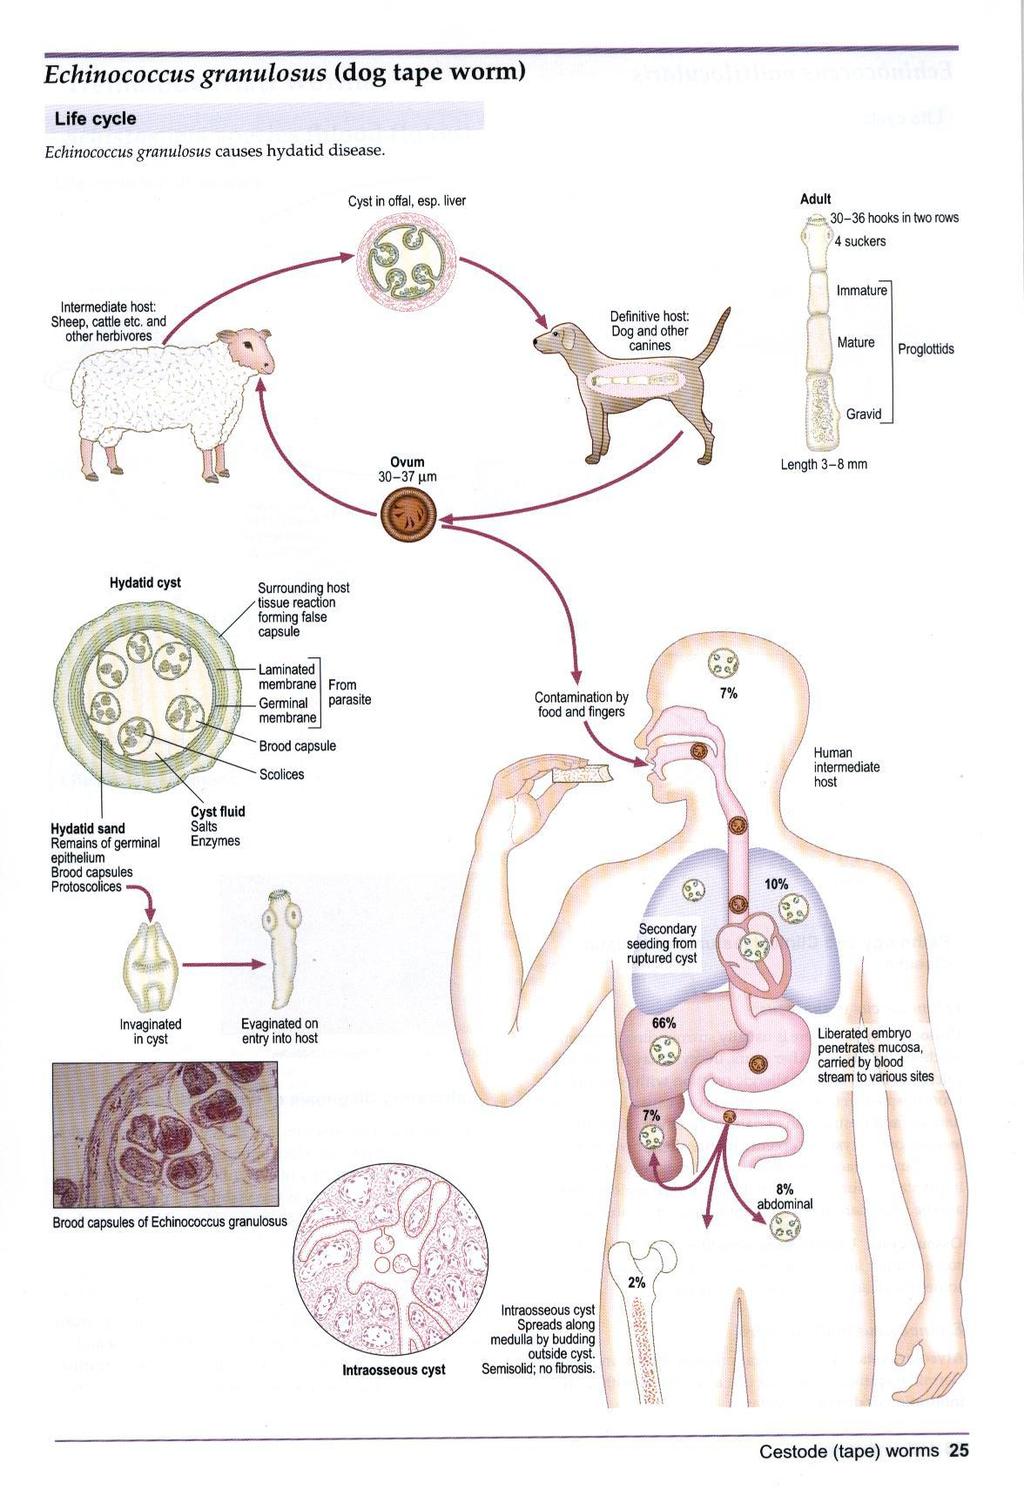 Life cycle of Echinococcus شكل )5(: دورة ح اة